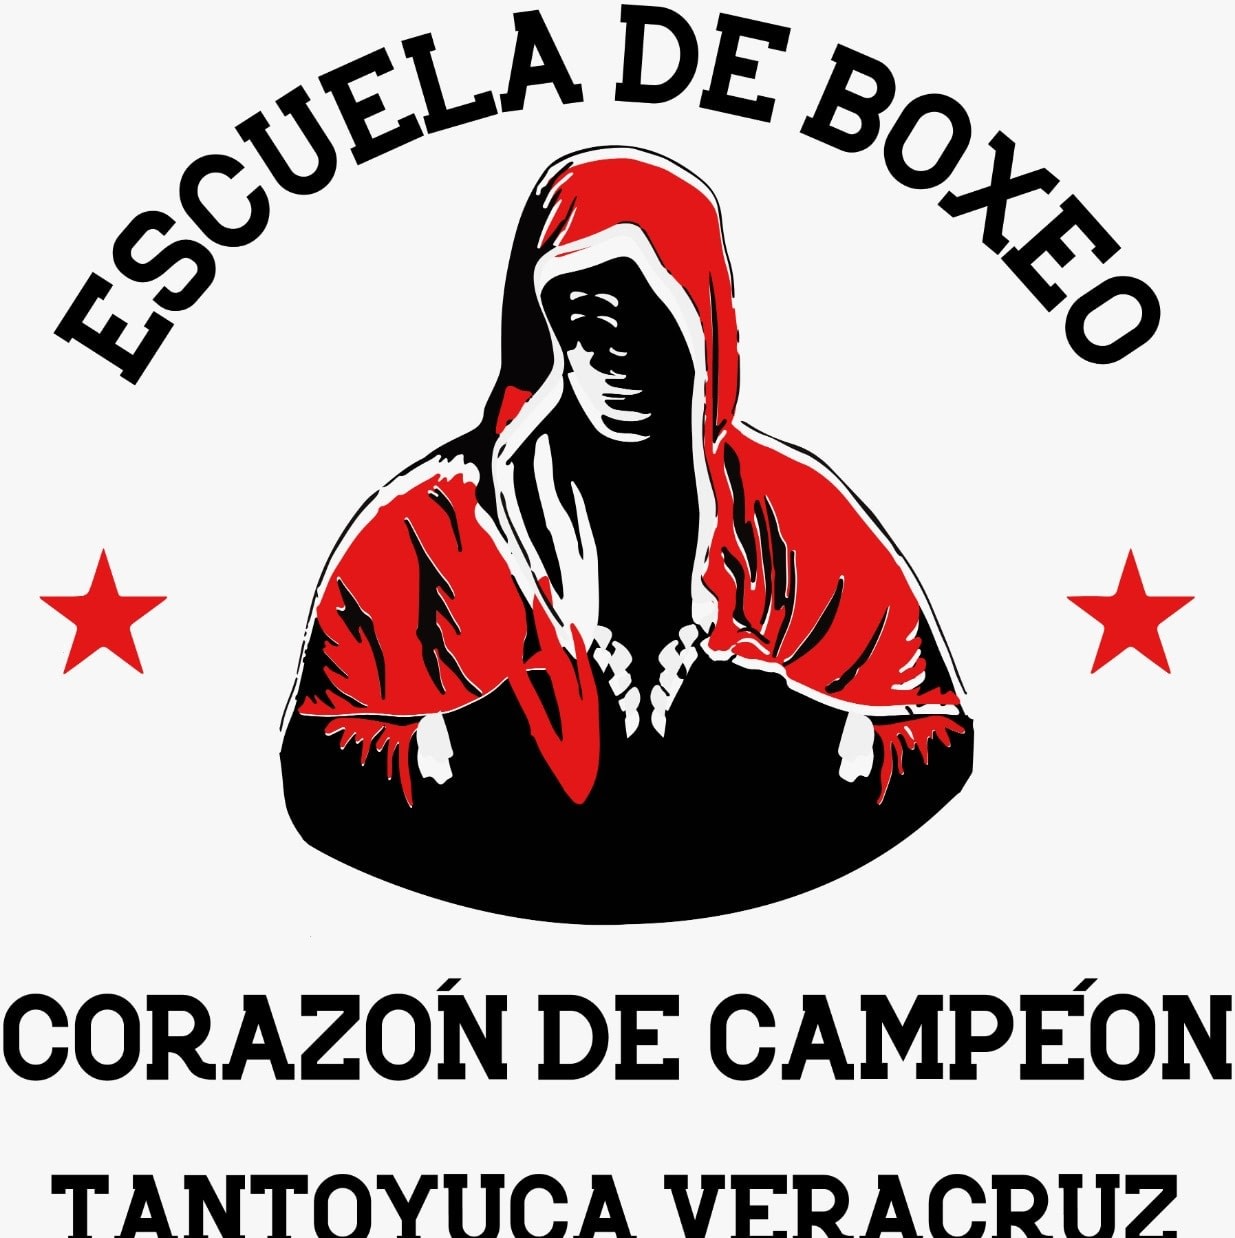 Sparri̇ng Boxi̇ng Club Escuela de Boxeo Tantoyuca "Corazón de Campeón"